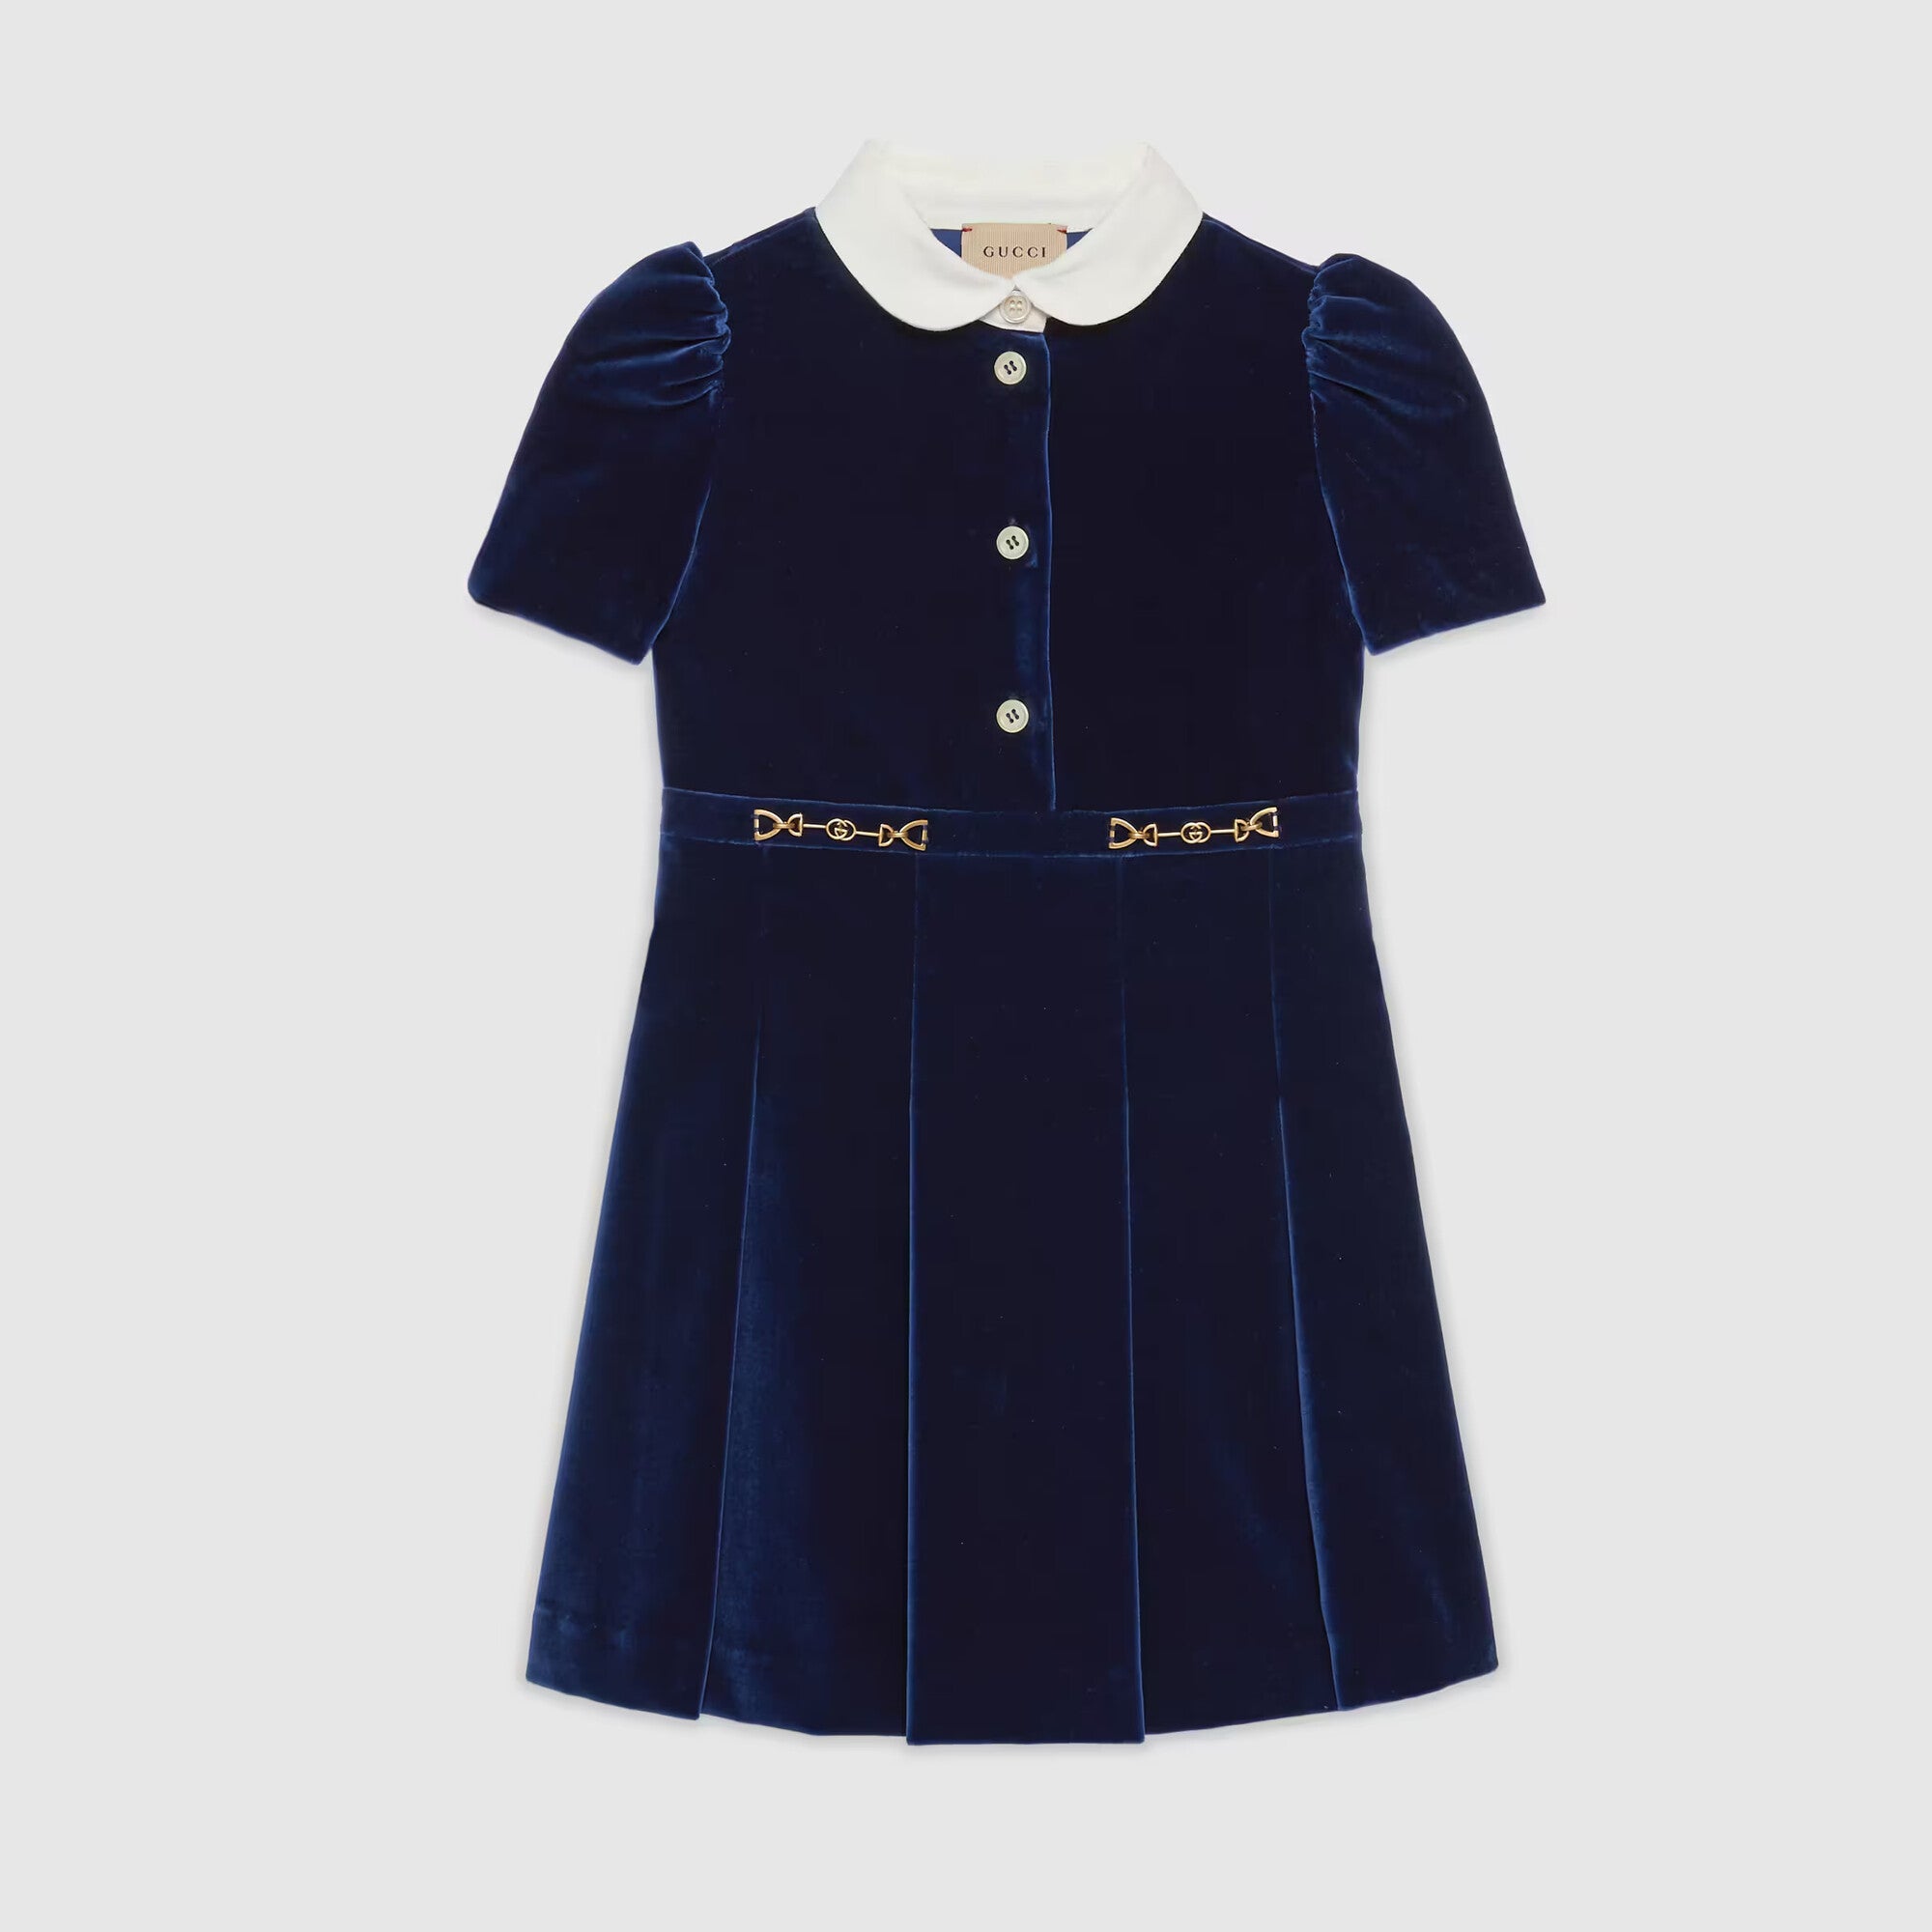 Girls Navy Velvet Dress